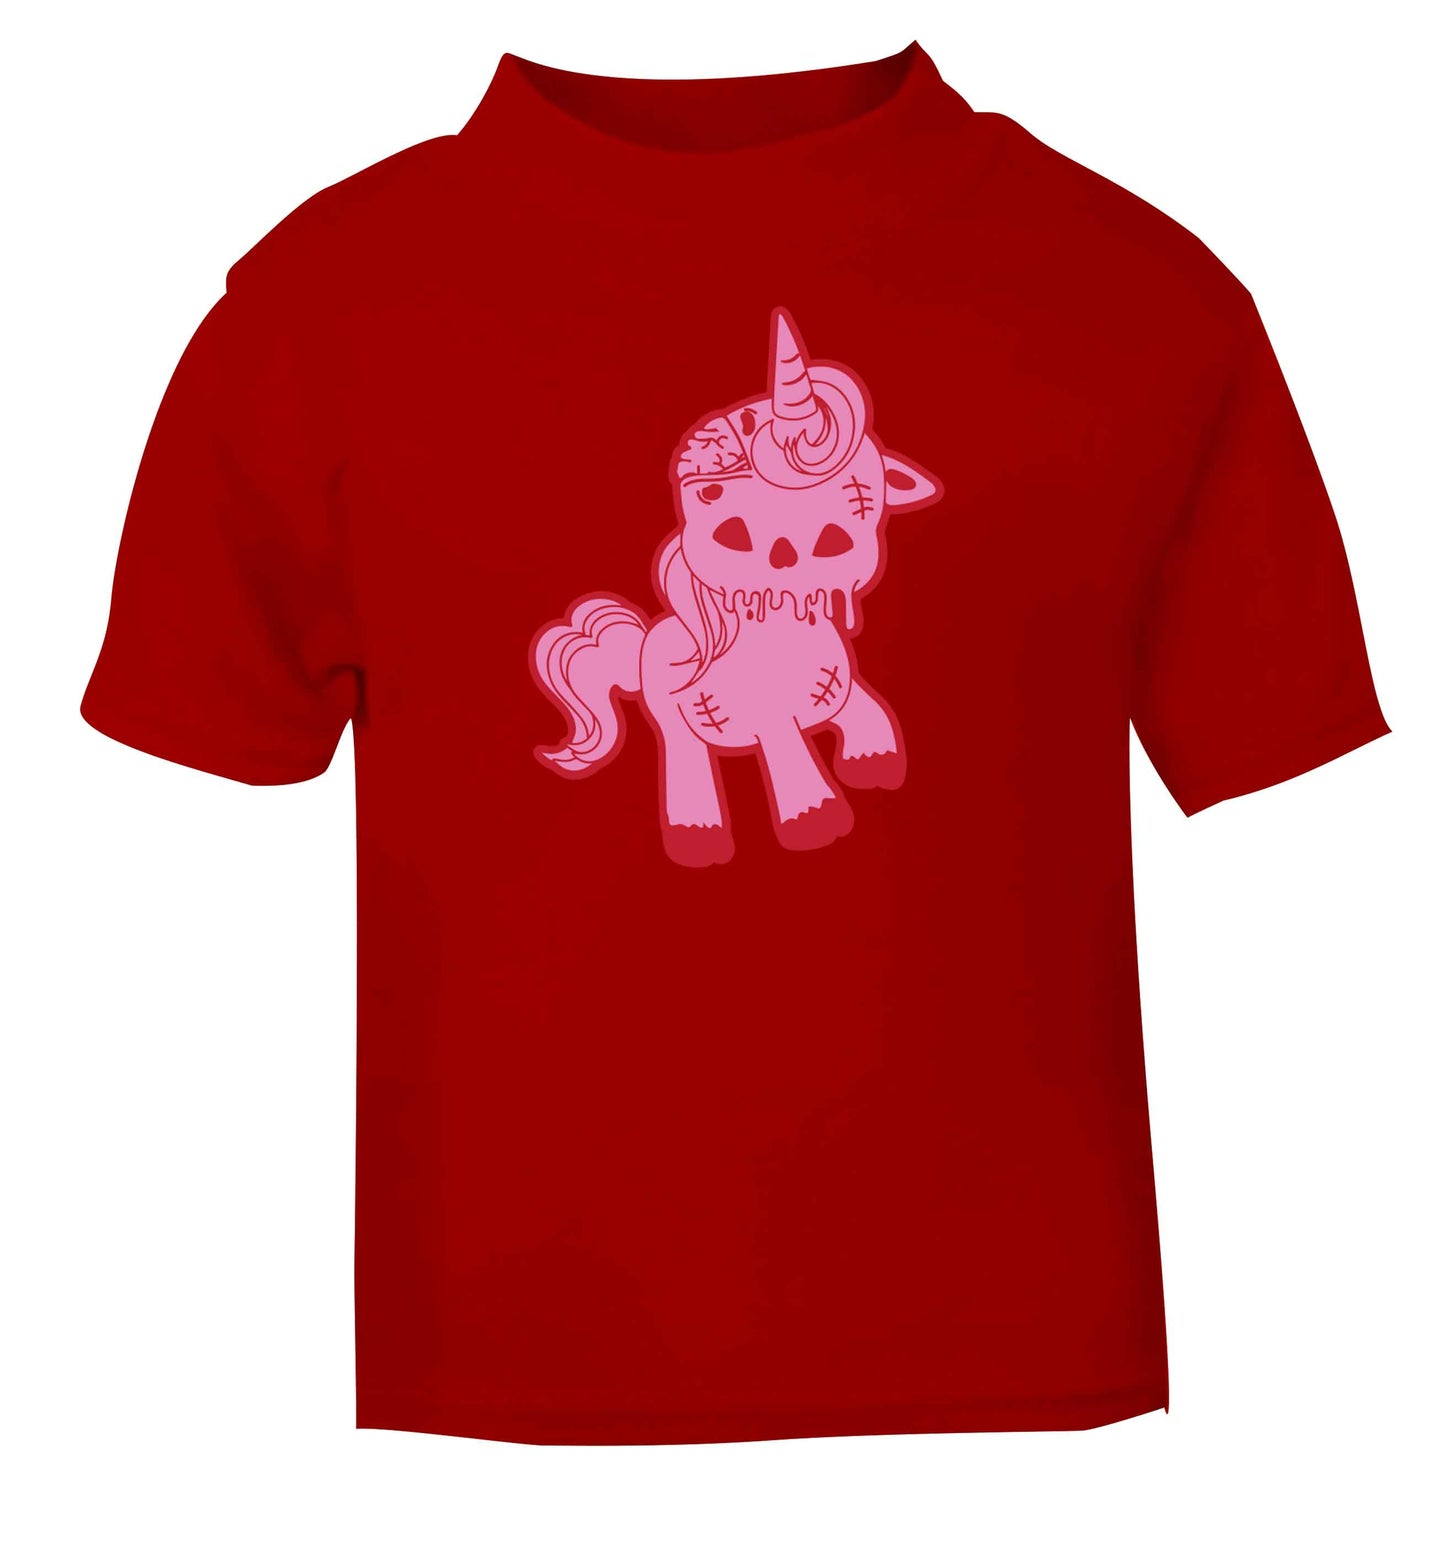 Zombie unicorn zombiecorn red baby toddler Tshirt 2 Years